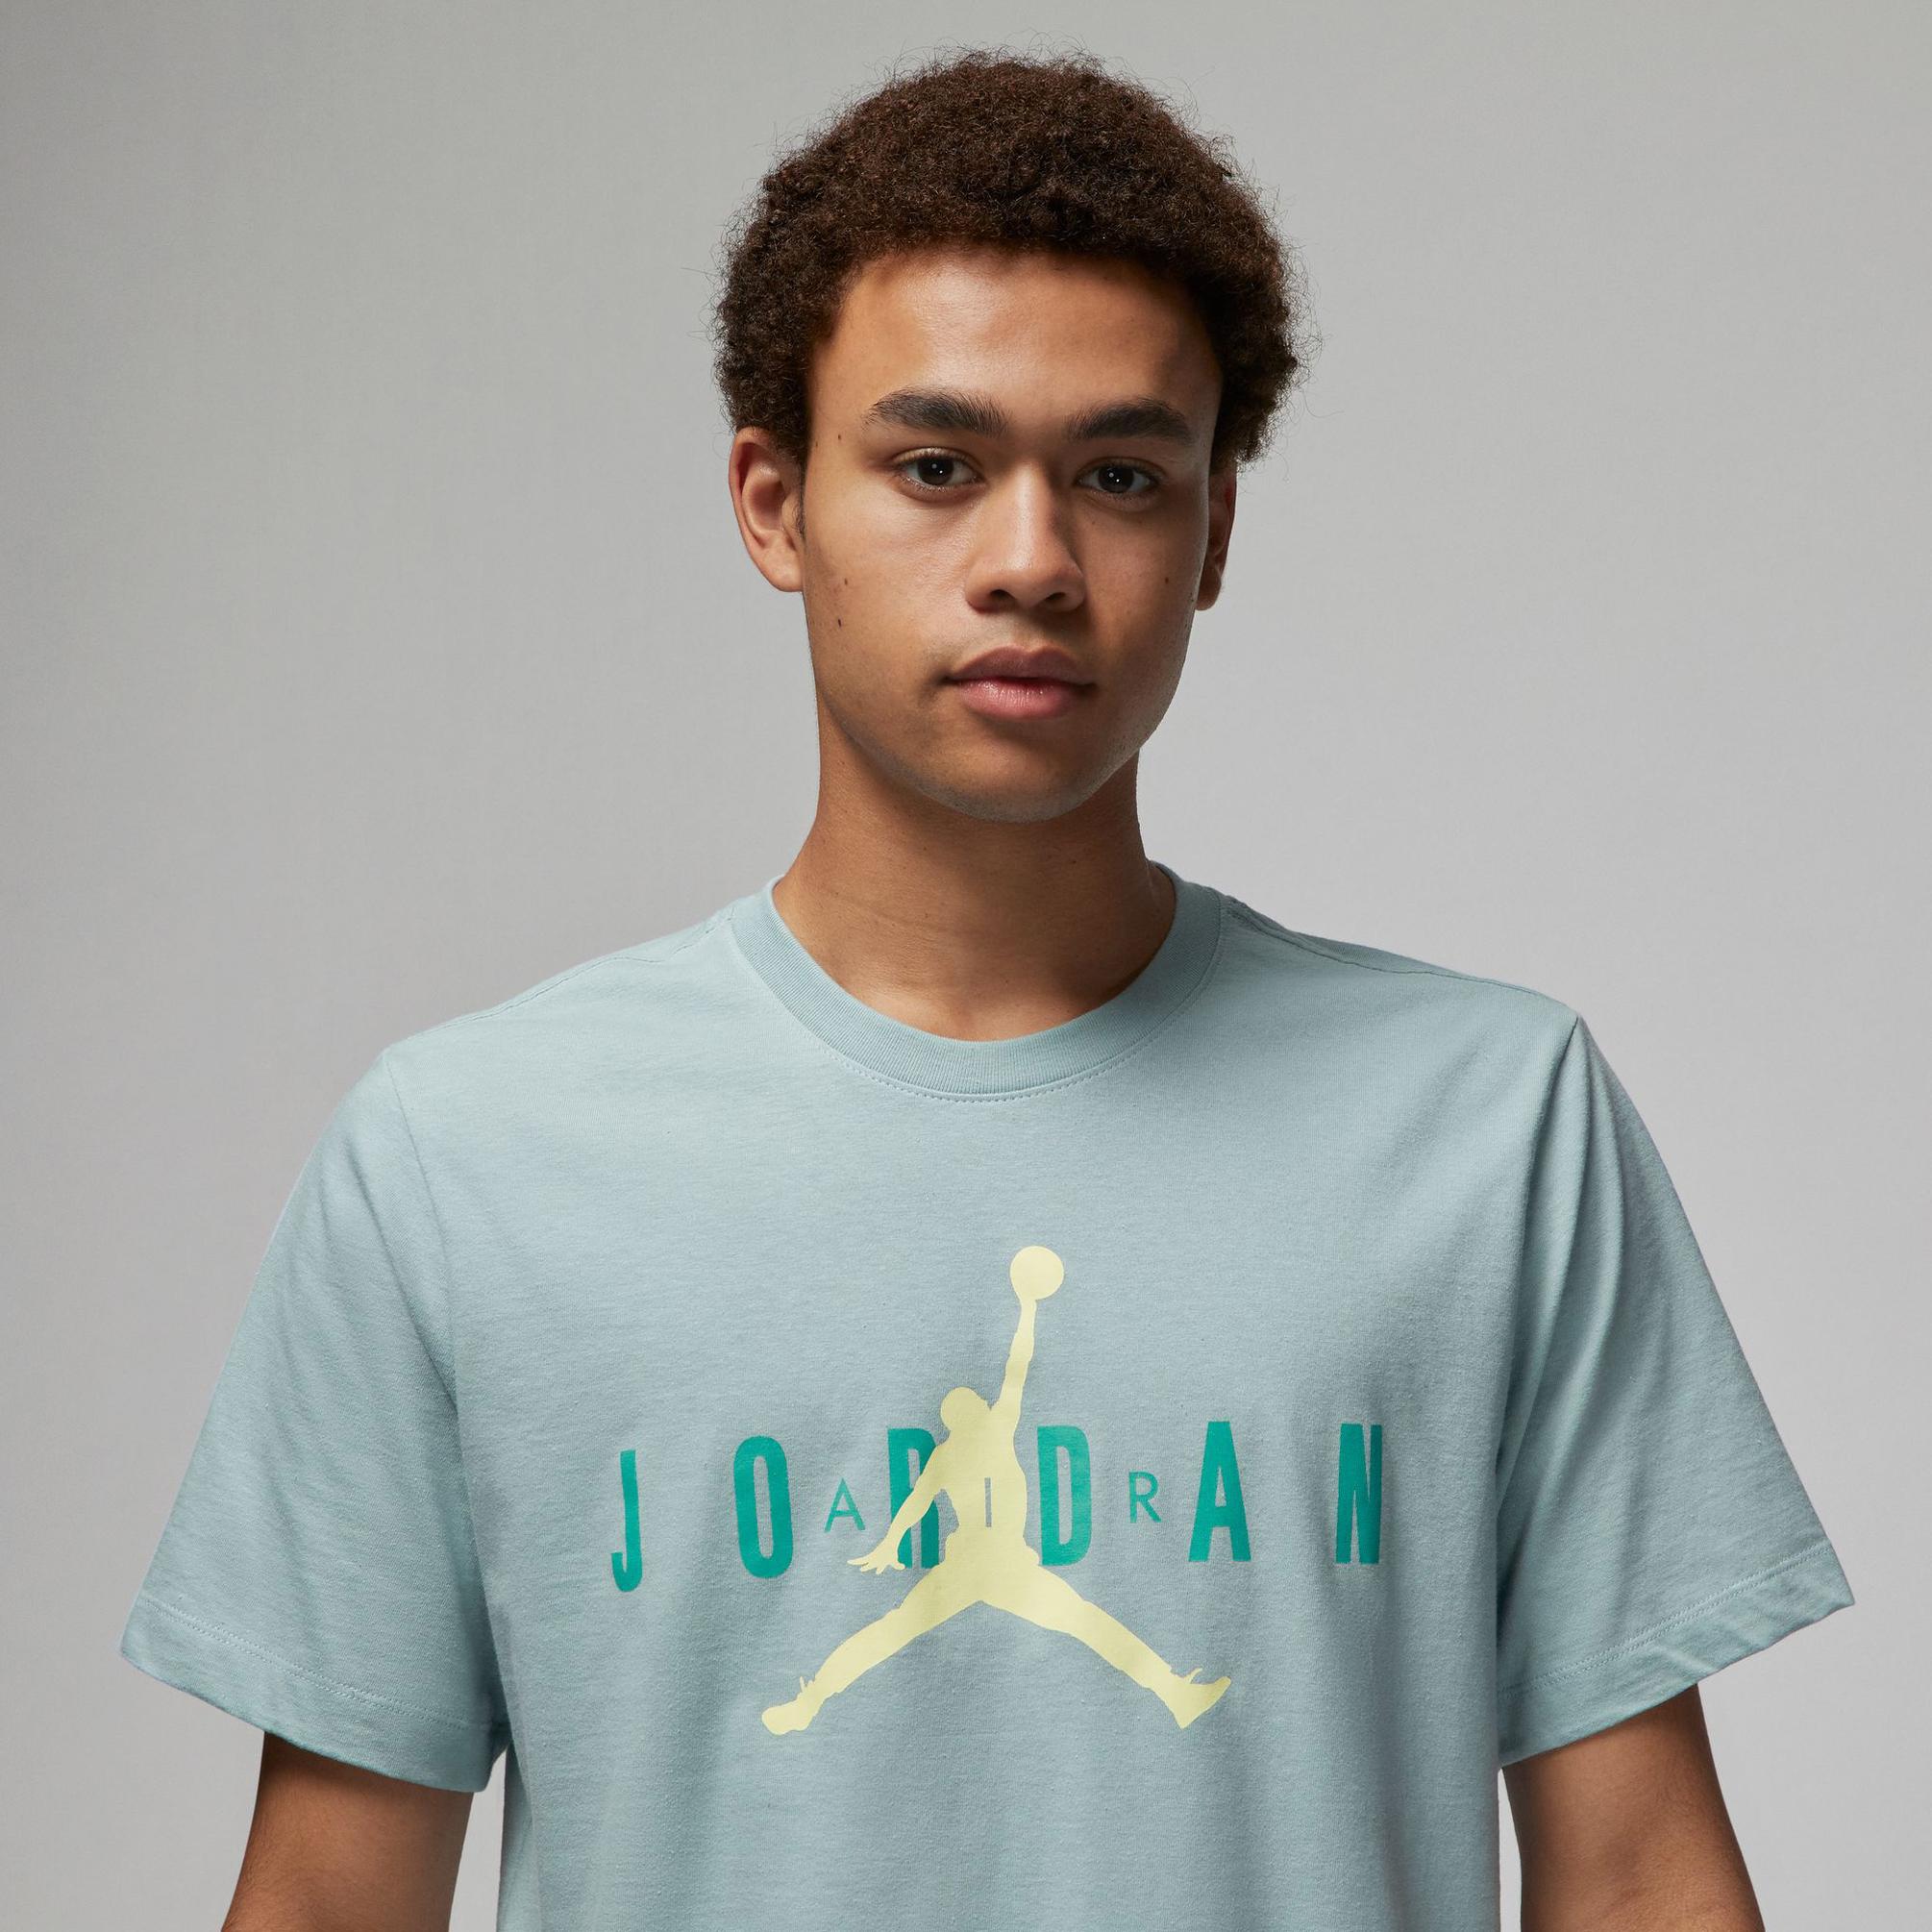  Nike Jordan Erkek Yeşil T-shirt